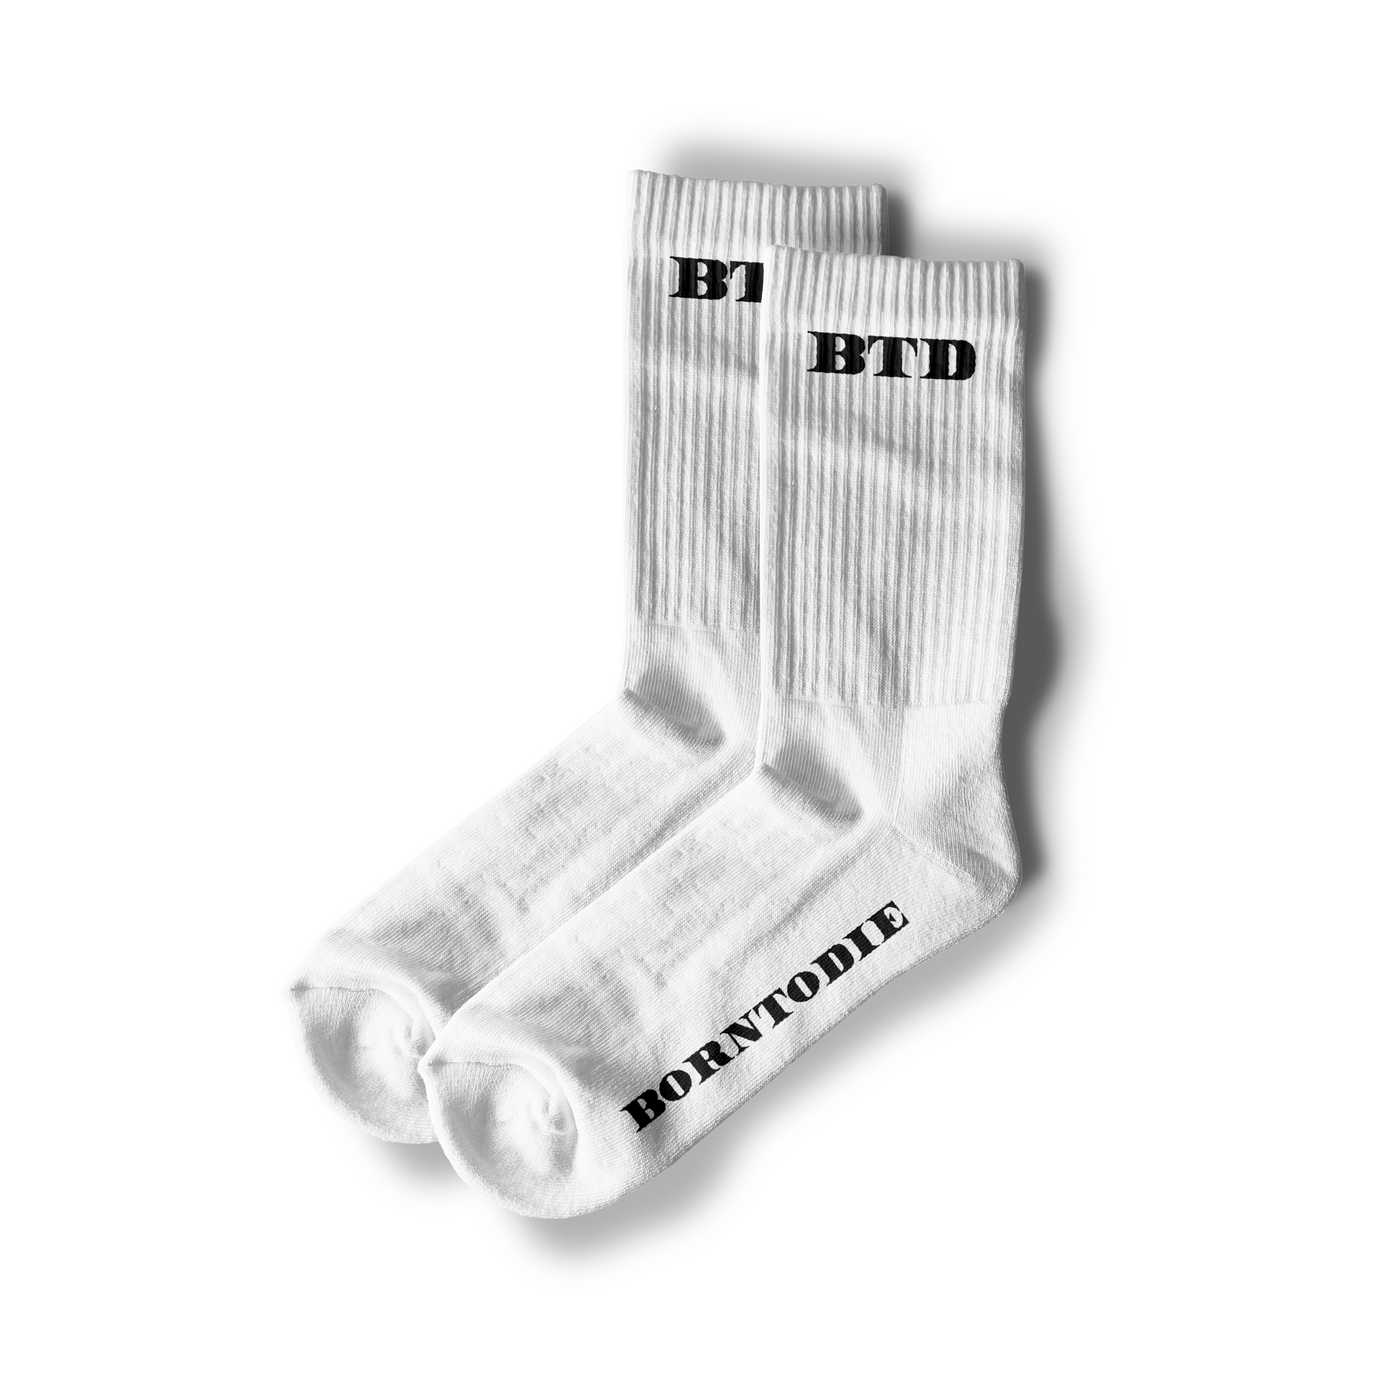 BTD White Socks